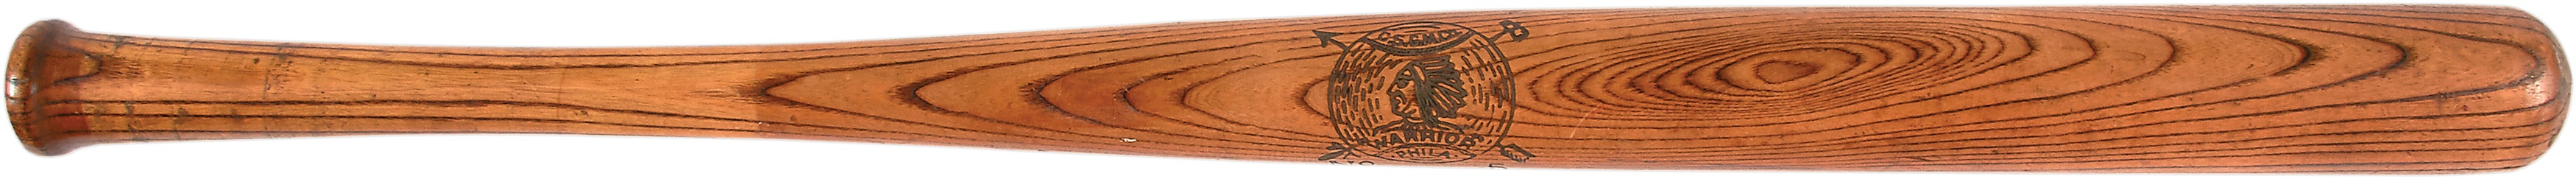 - Circa 1900 Warrior Baseball Bat